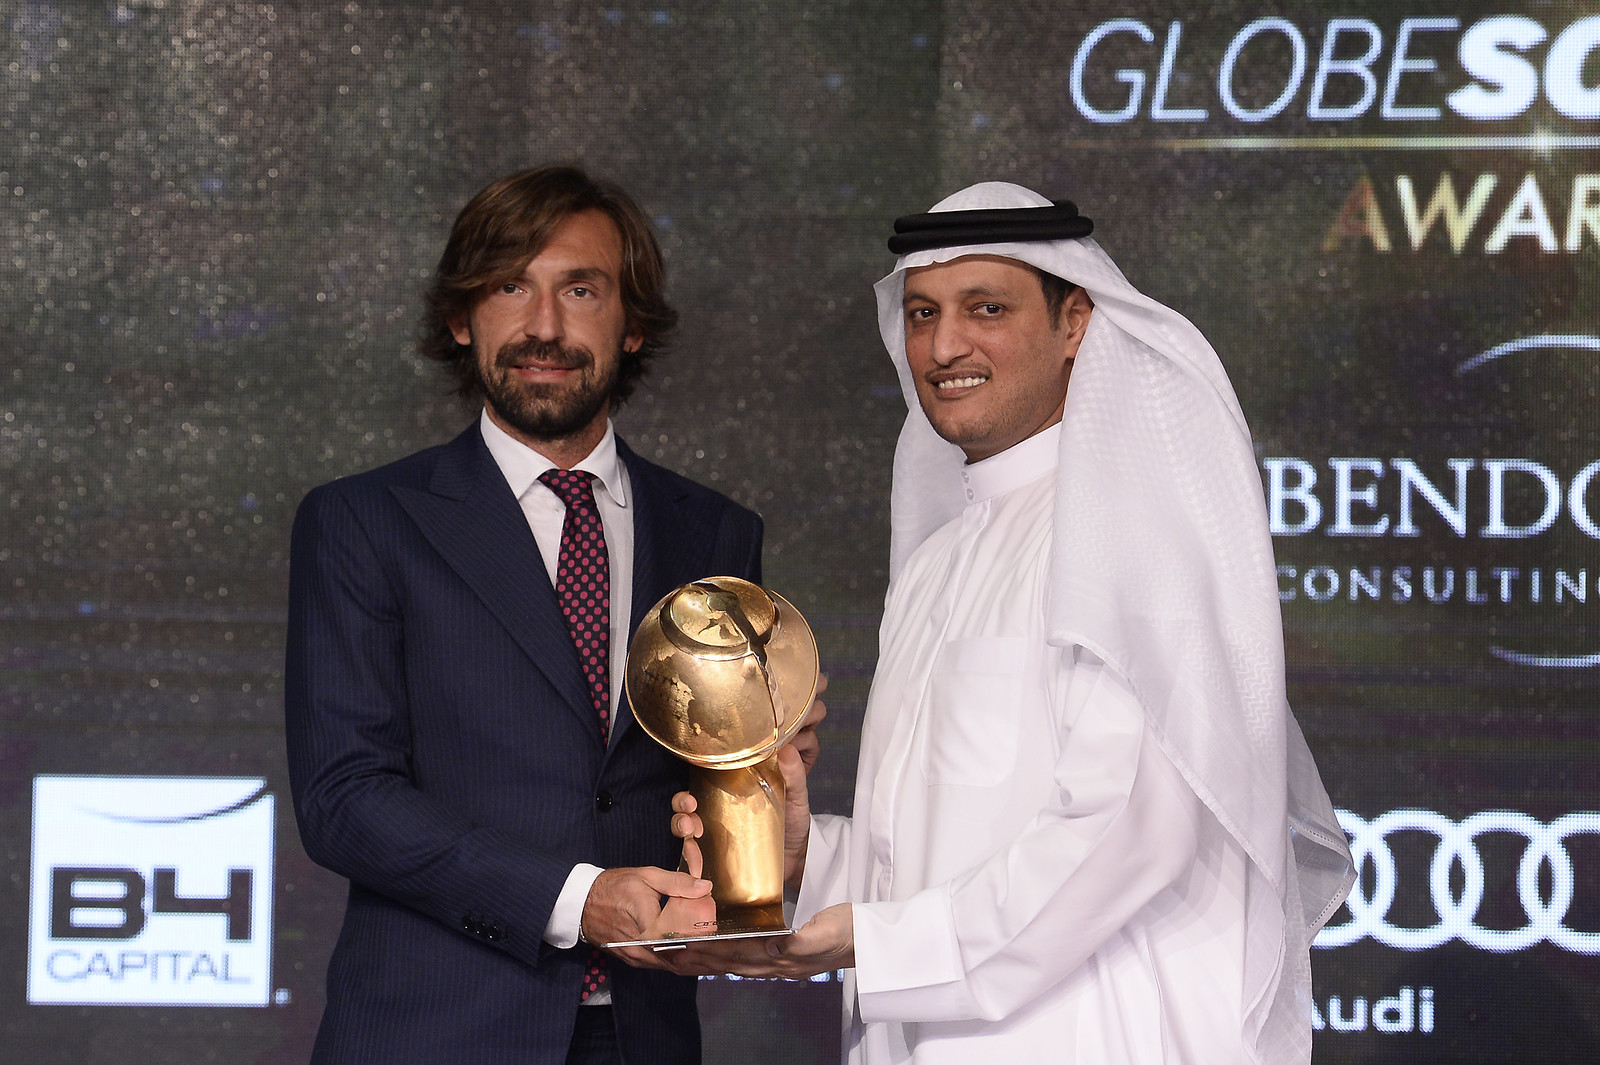 "Globe Soccer Award 2015"